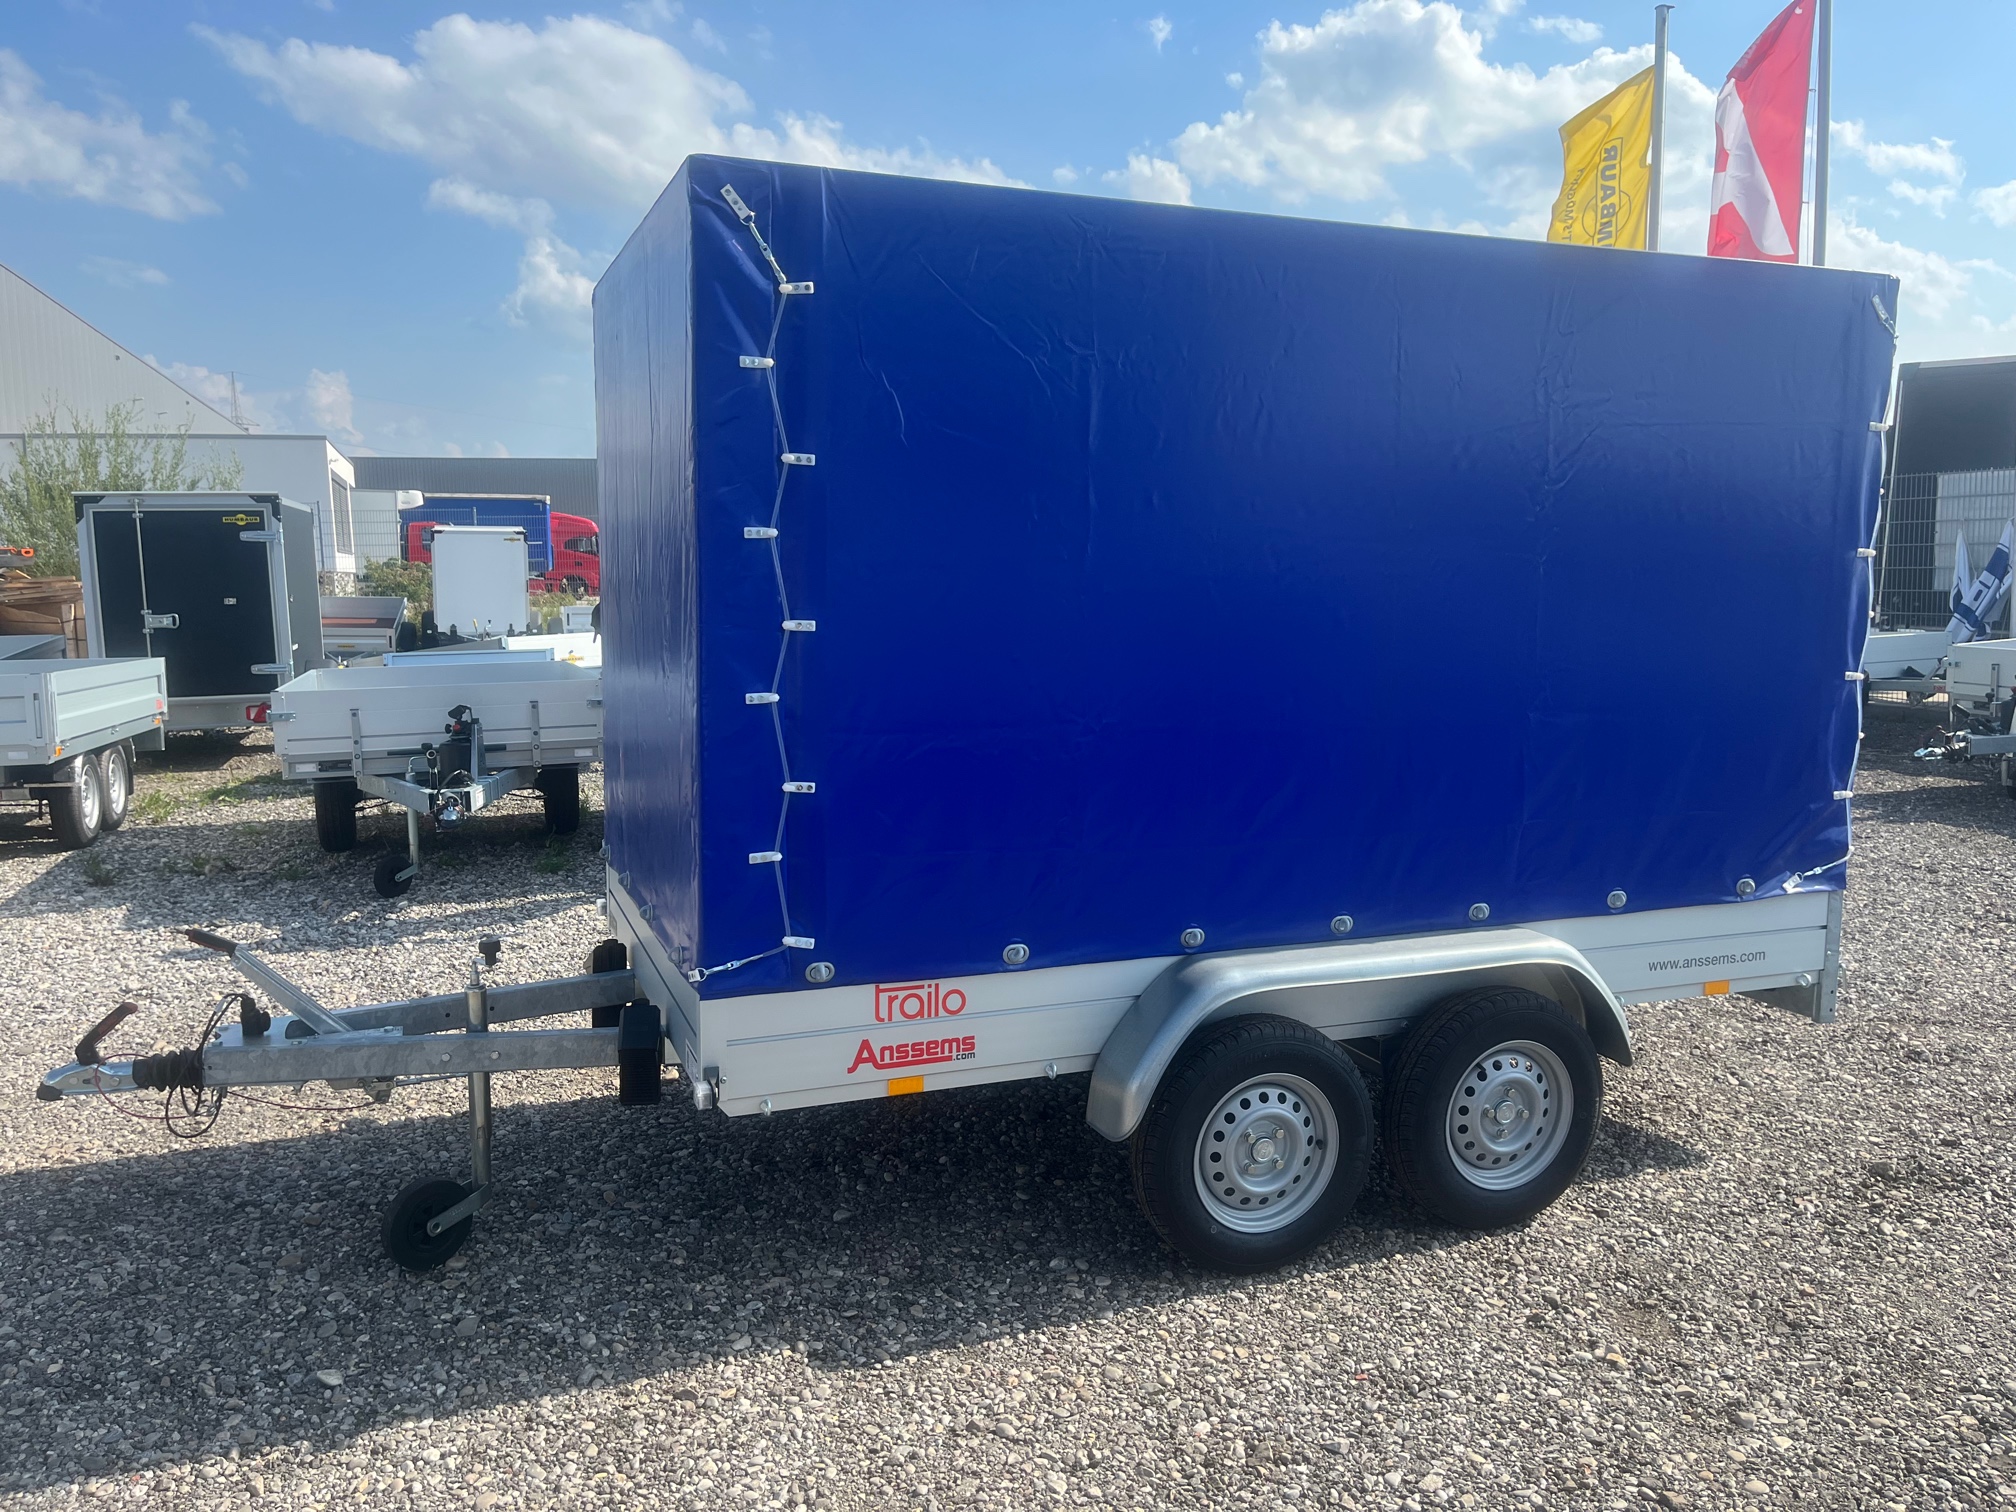 Anssems PKW Anhänger Tieflader Alu GTT 2000 kg, Ladefläche 3,01 x 1,51 m - mit Planenaufbau 1,80 m blau